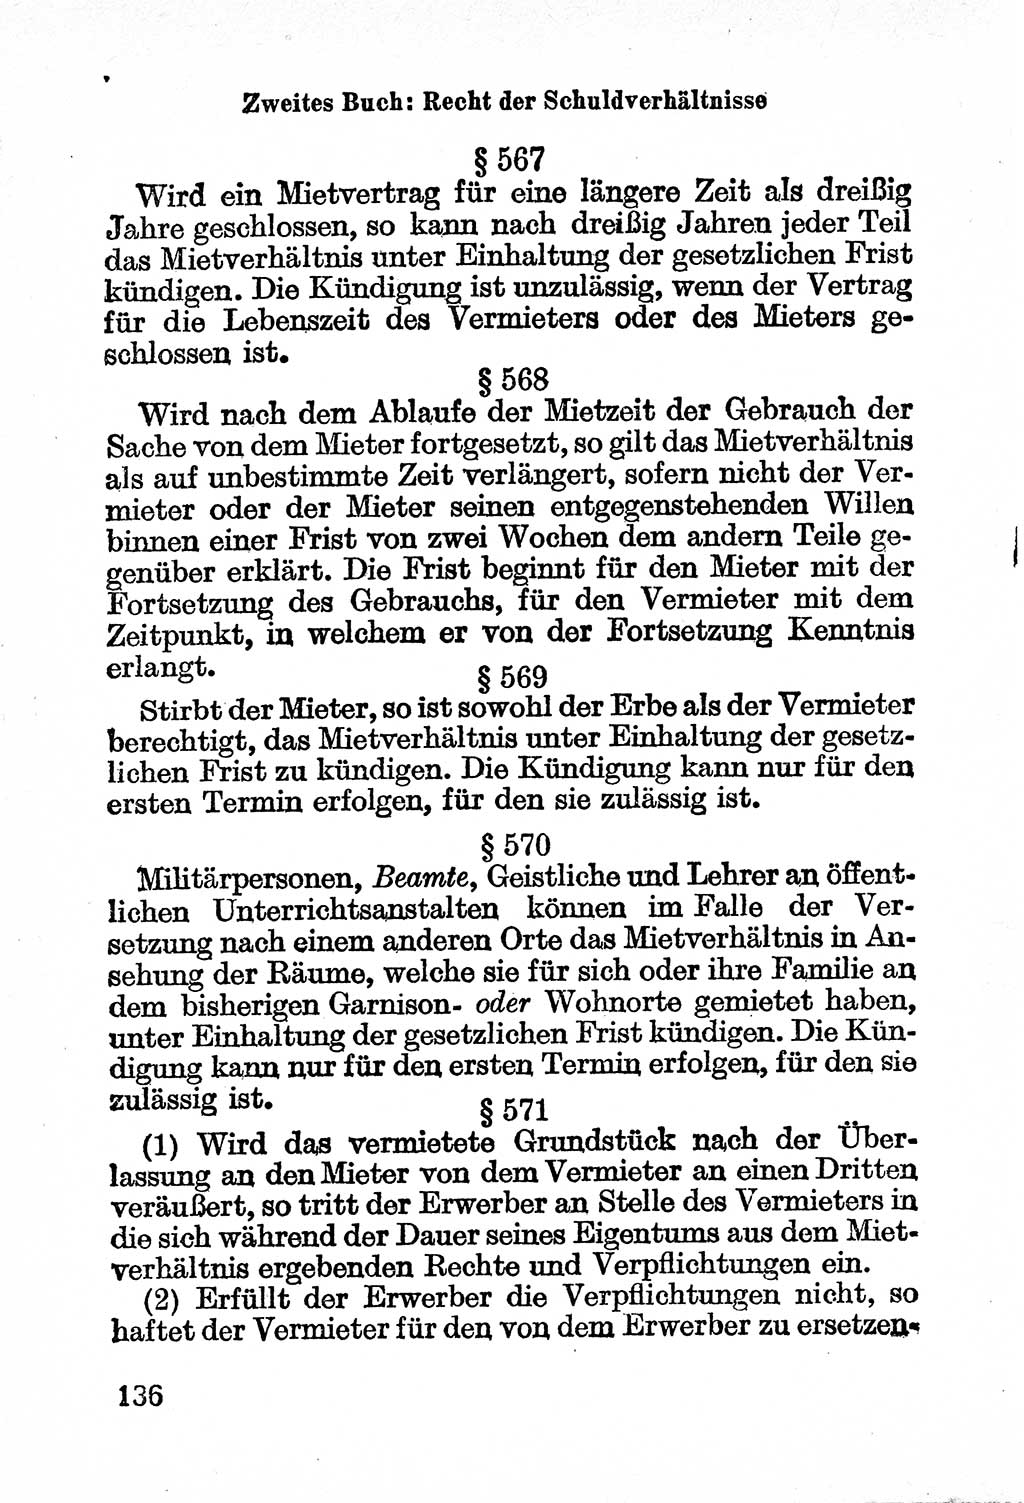 Bürgerliches Gesetzbuch (BGB) nebst wichtigen Nebengesetzen [Deutsche Demokratische Republik (DDR)] 1956, Seite 136 (BGB Nebenges. DDR 1956, S. 136)